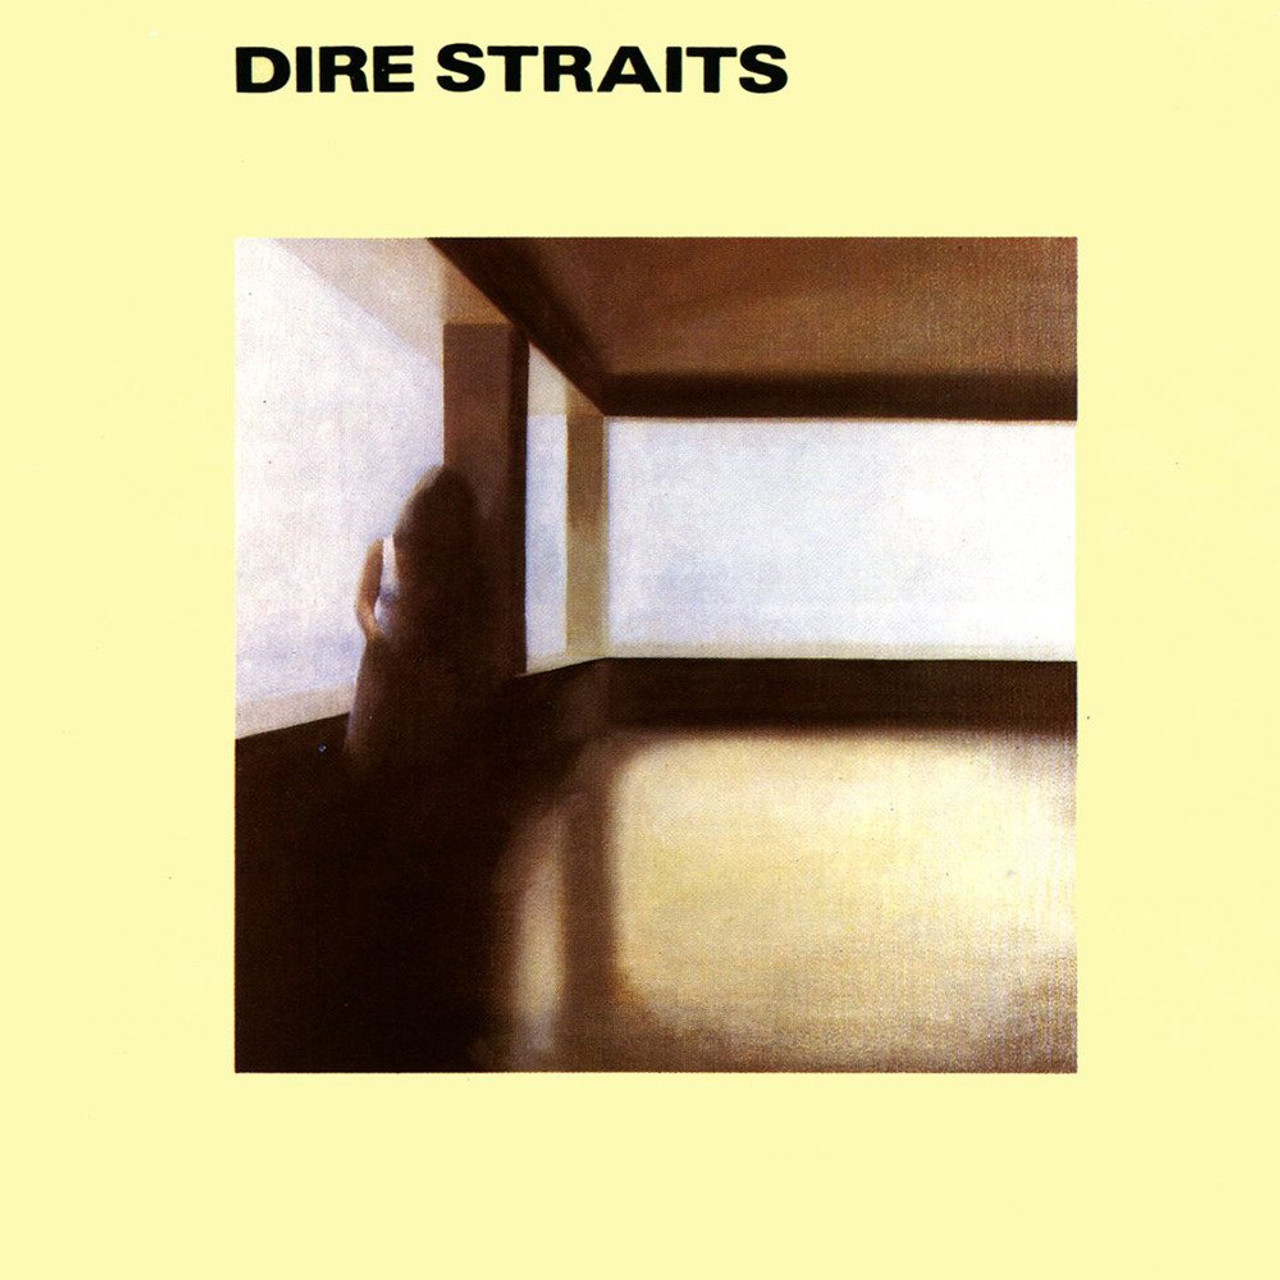 Dire Straits - 'Dire Straits' LP 180g Black Vinyl